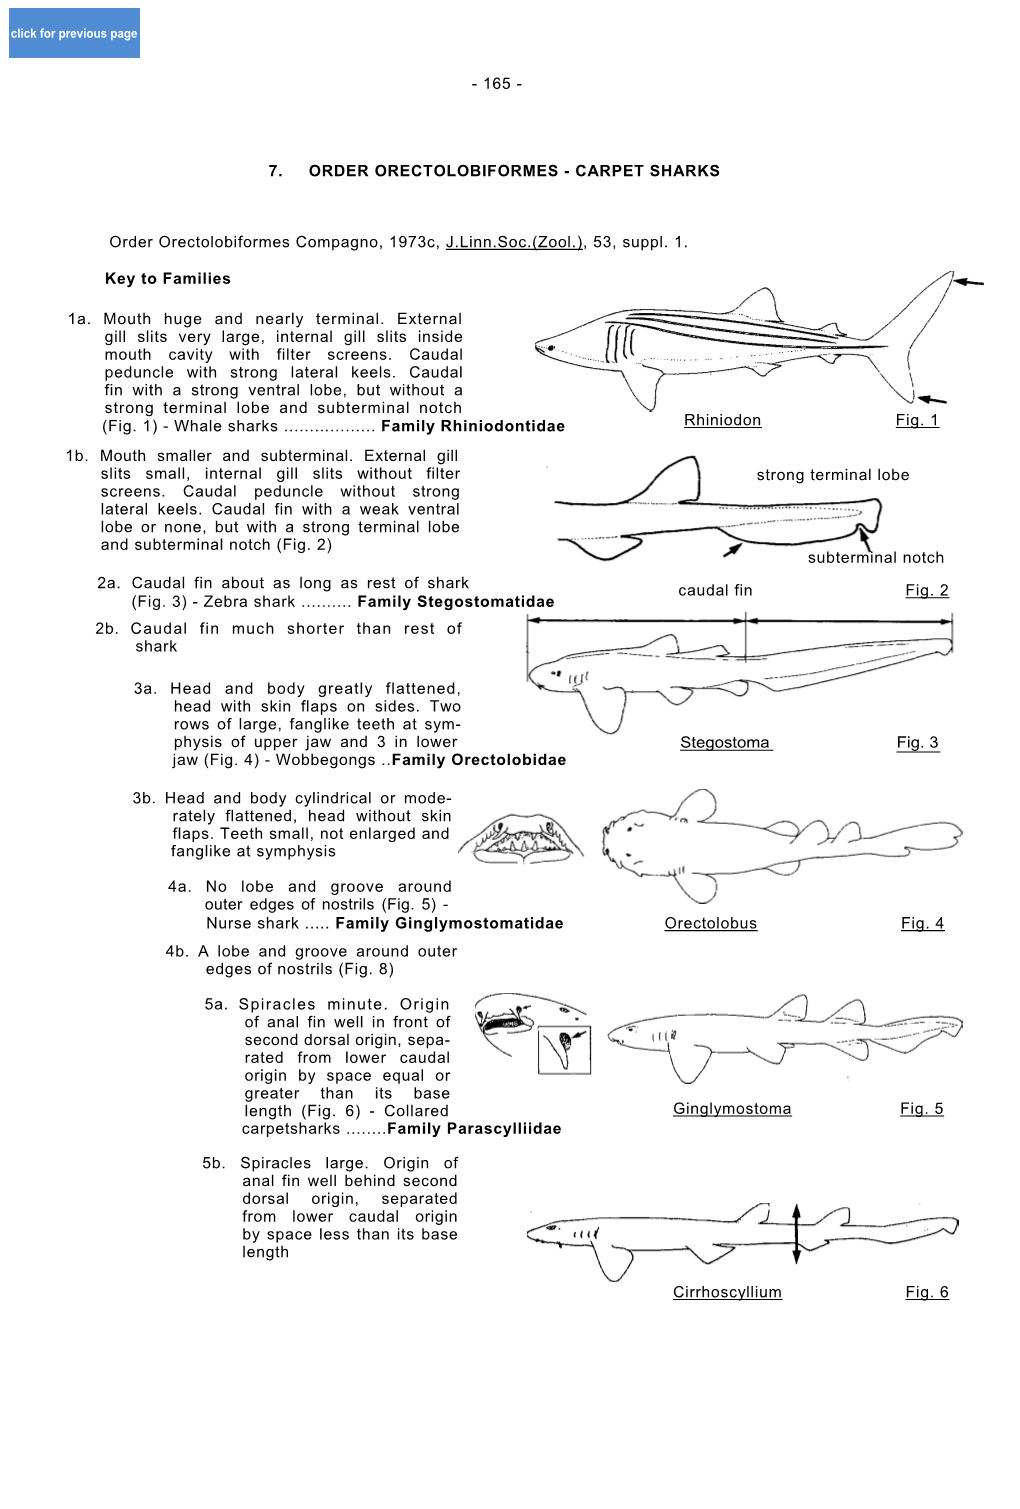 CARPET SHARKS Order Orectolobiformes Compagno, 1973C, J